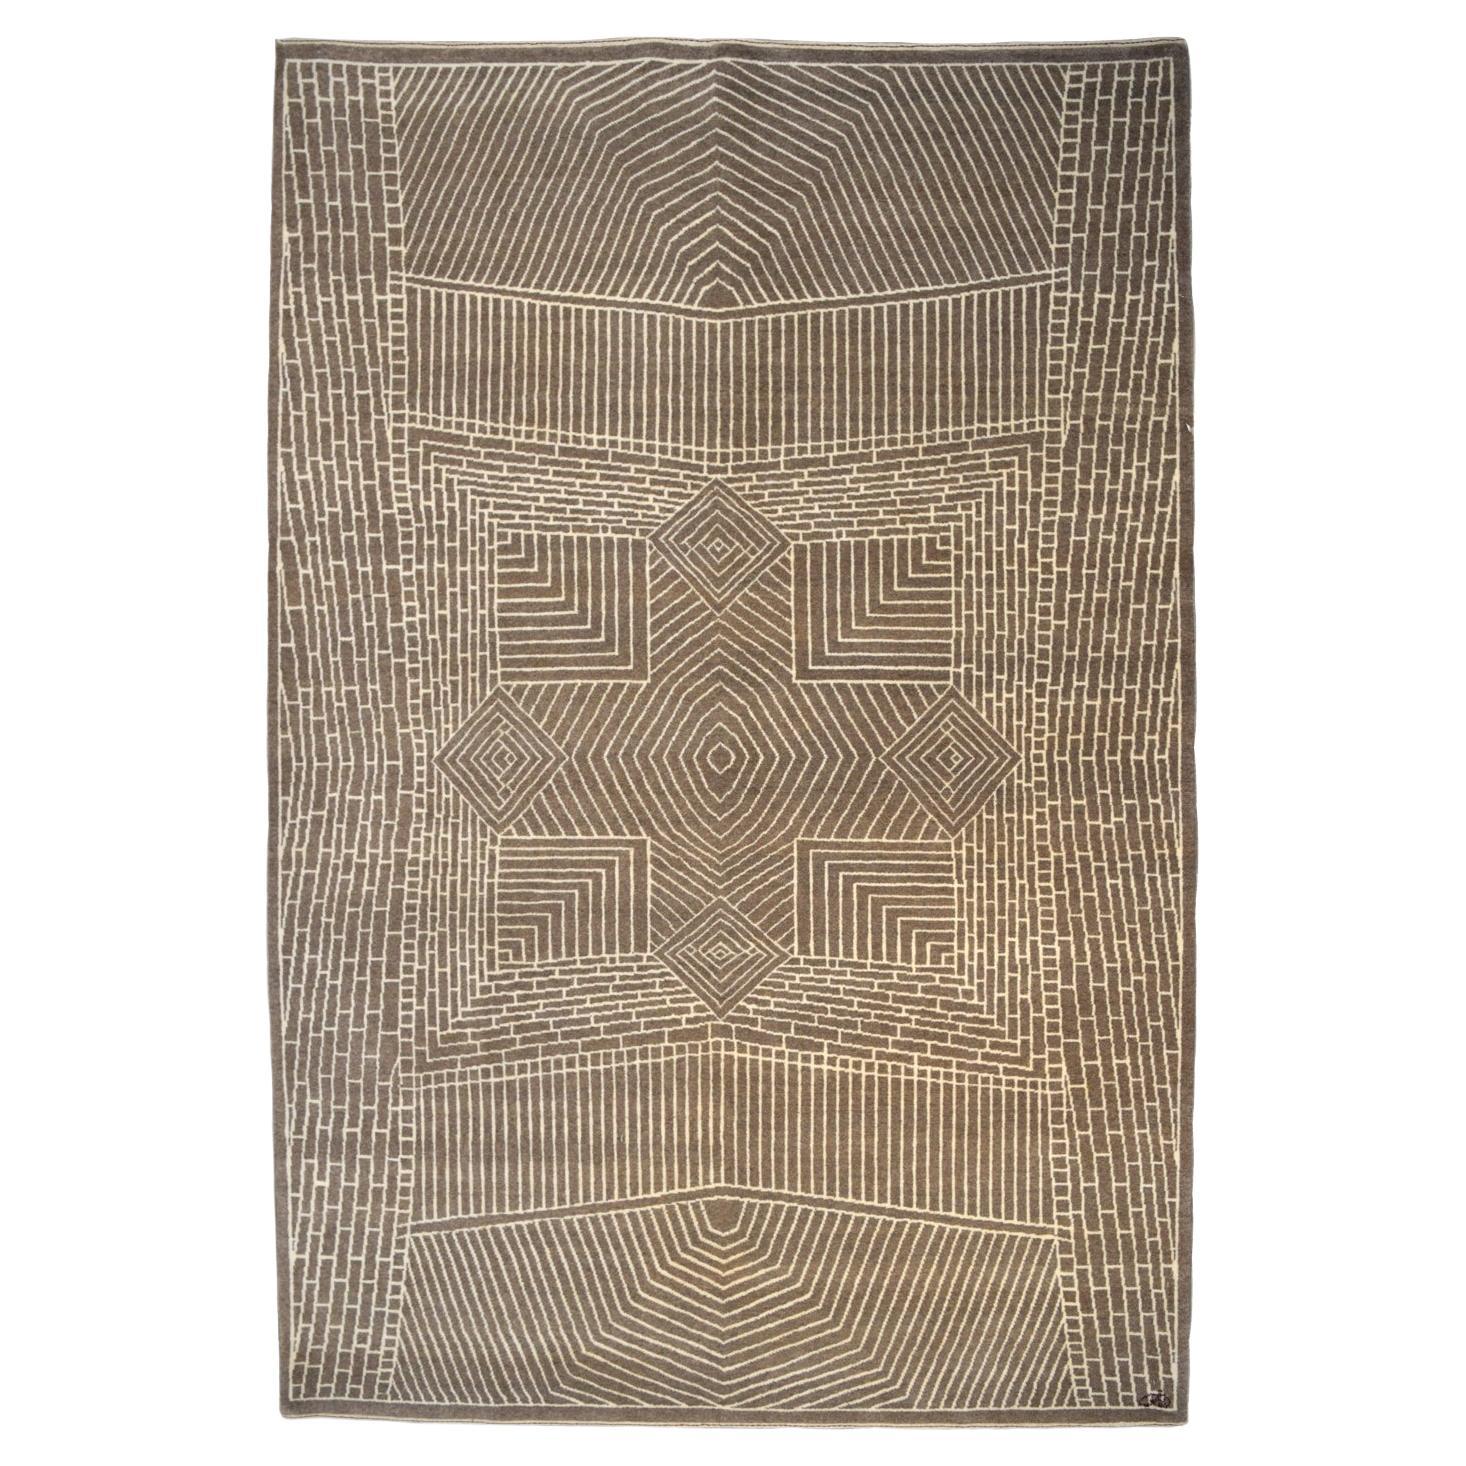 Orley Shabahang "Setareh" Contemporary Persian Rug, 6' x 9'